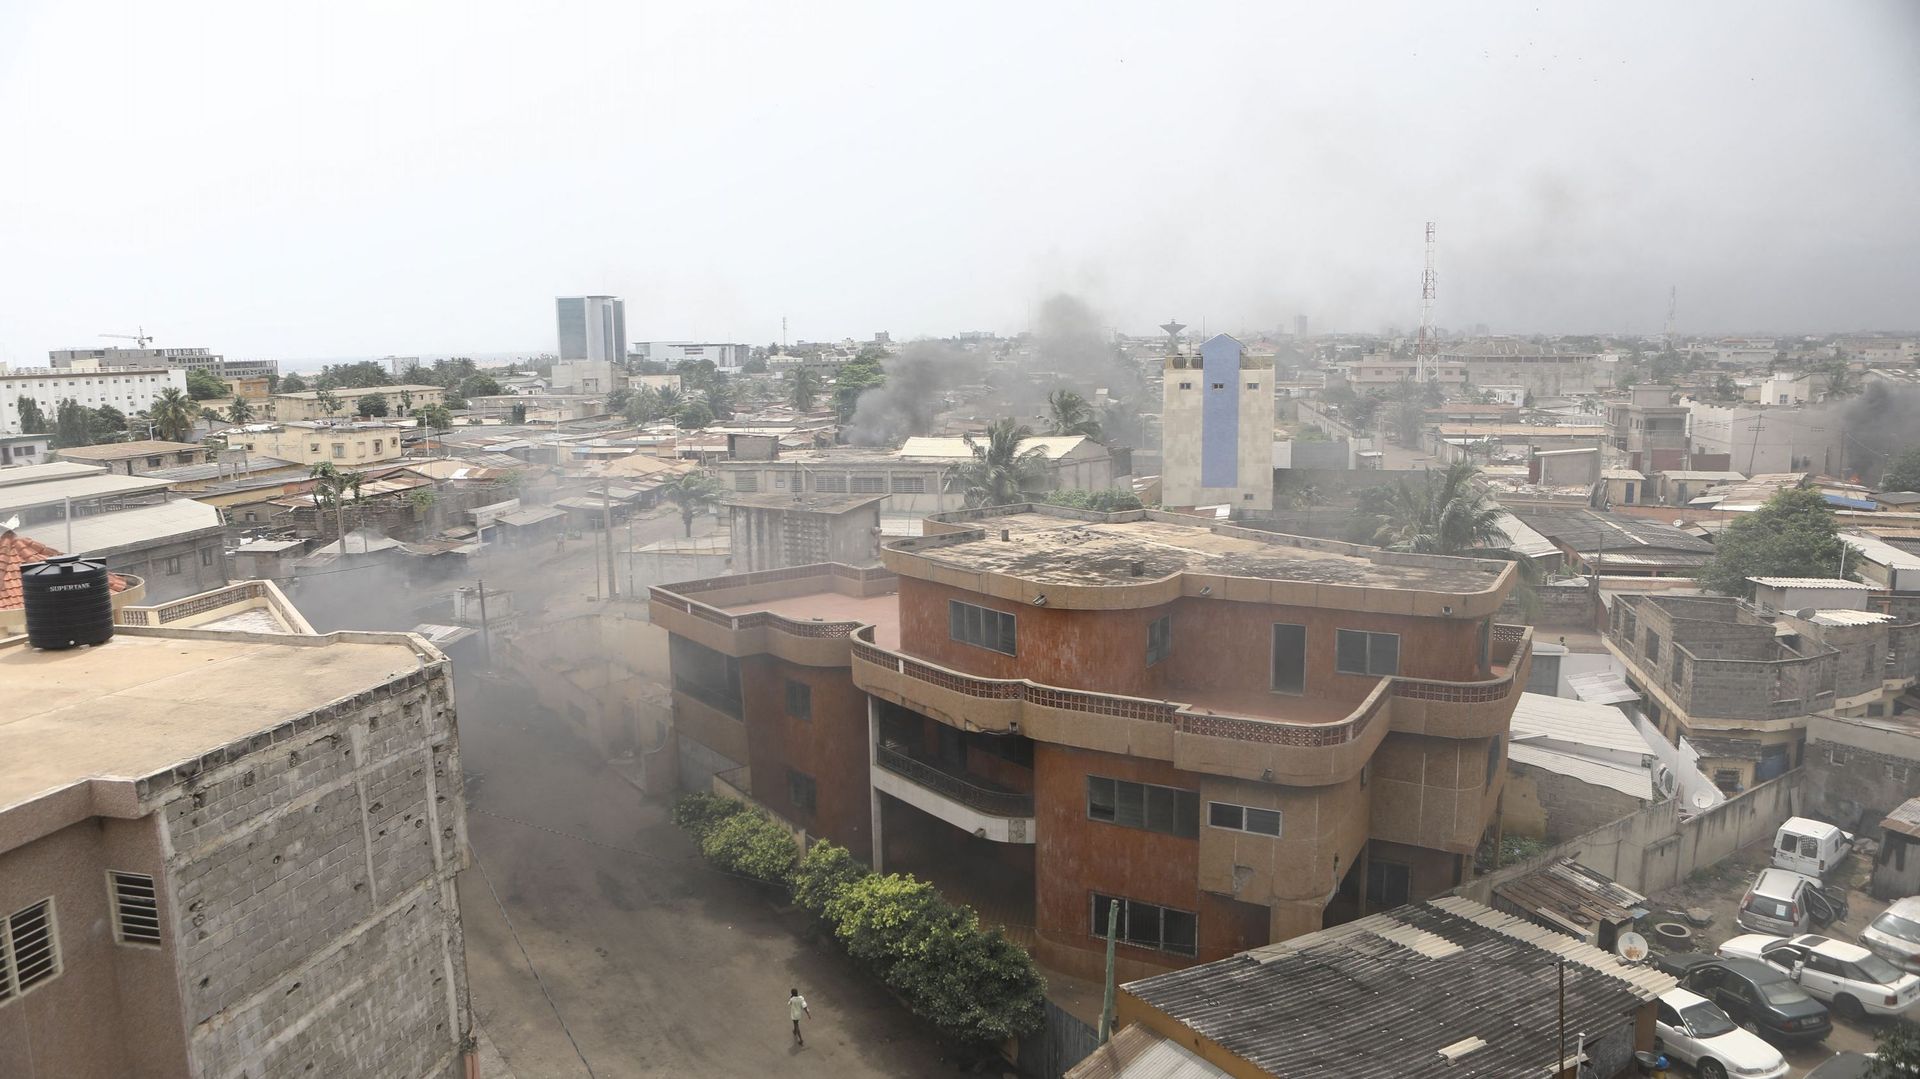 Image d'illustration. Des volutes de fumée s'échappent de barricades en feu à Lomé le 18 octobre 2017, où des partisans de l'opposition ont érigé des barricades de fortune et bloqué des routes, alors que des soldats et des policiers lançaient des gaz lacr